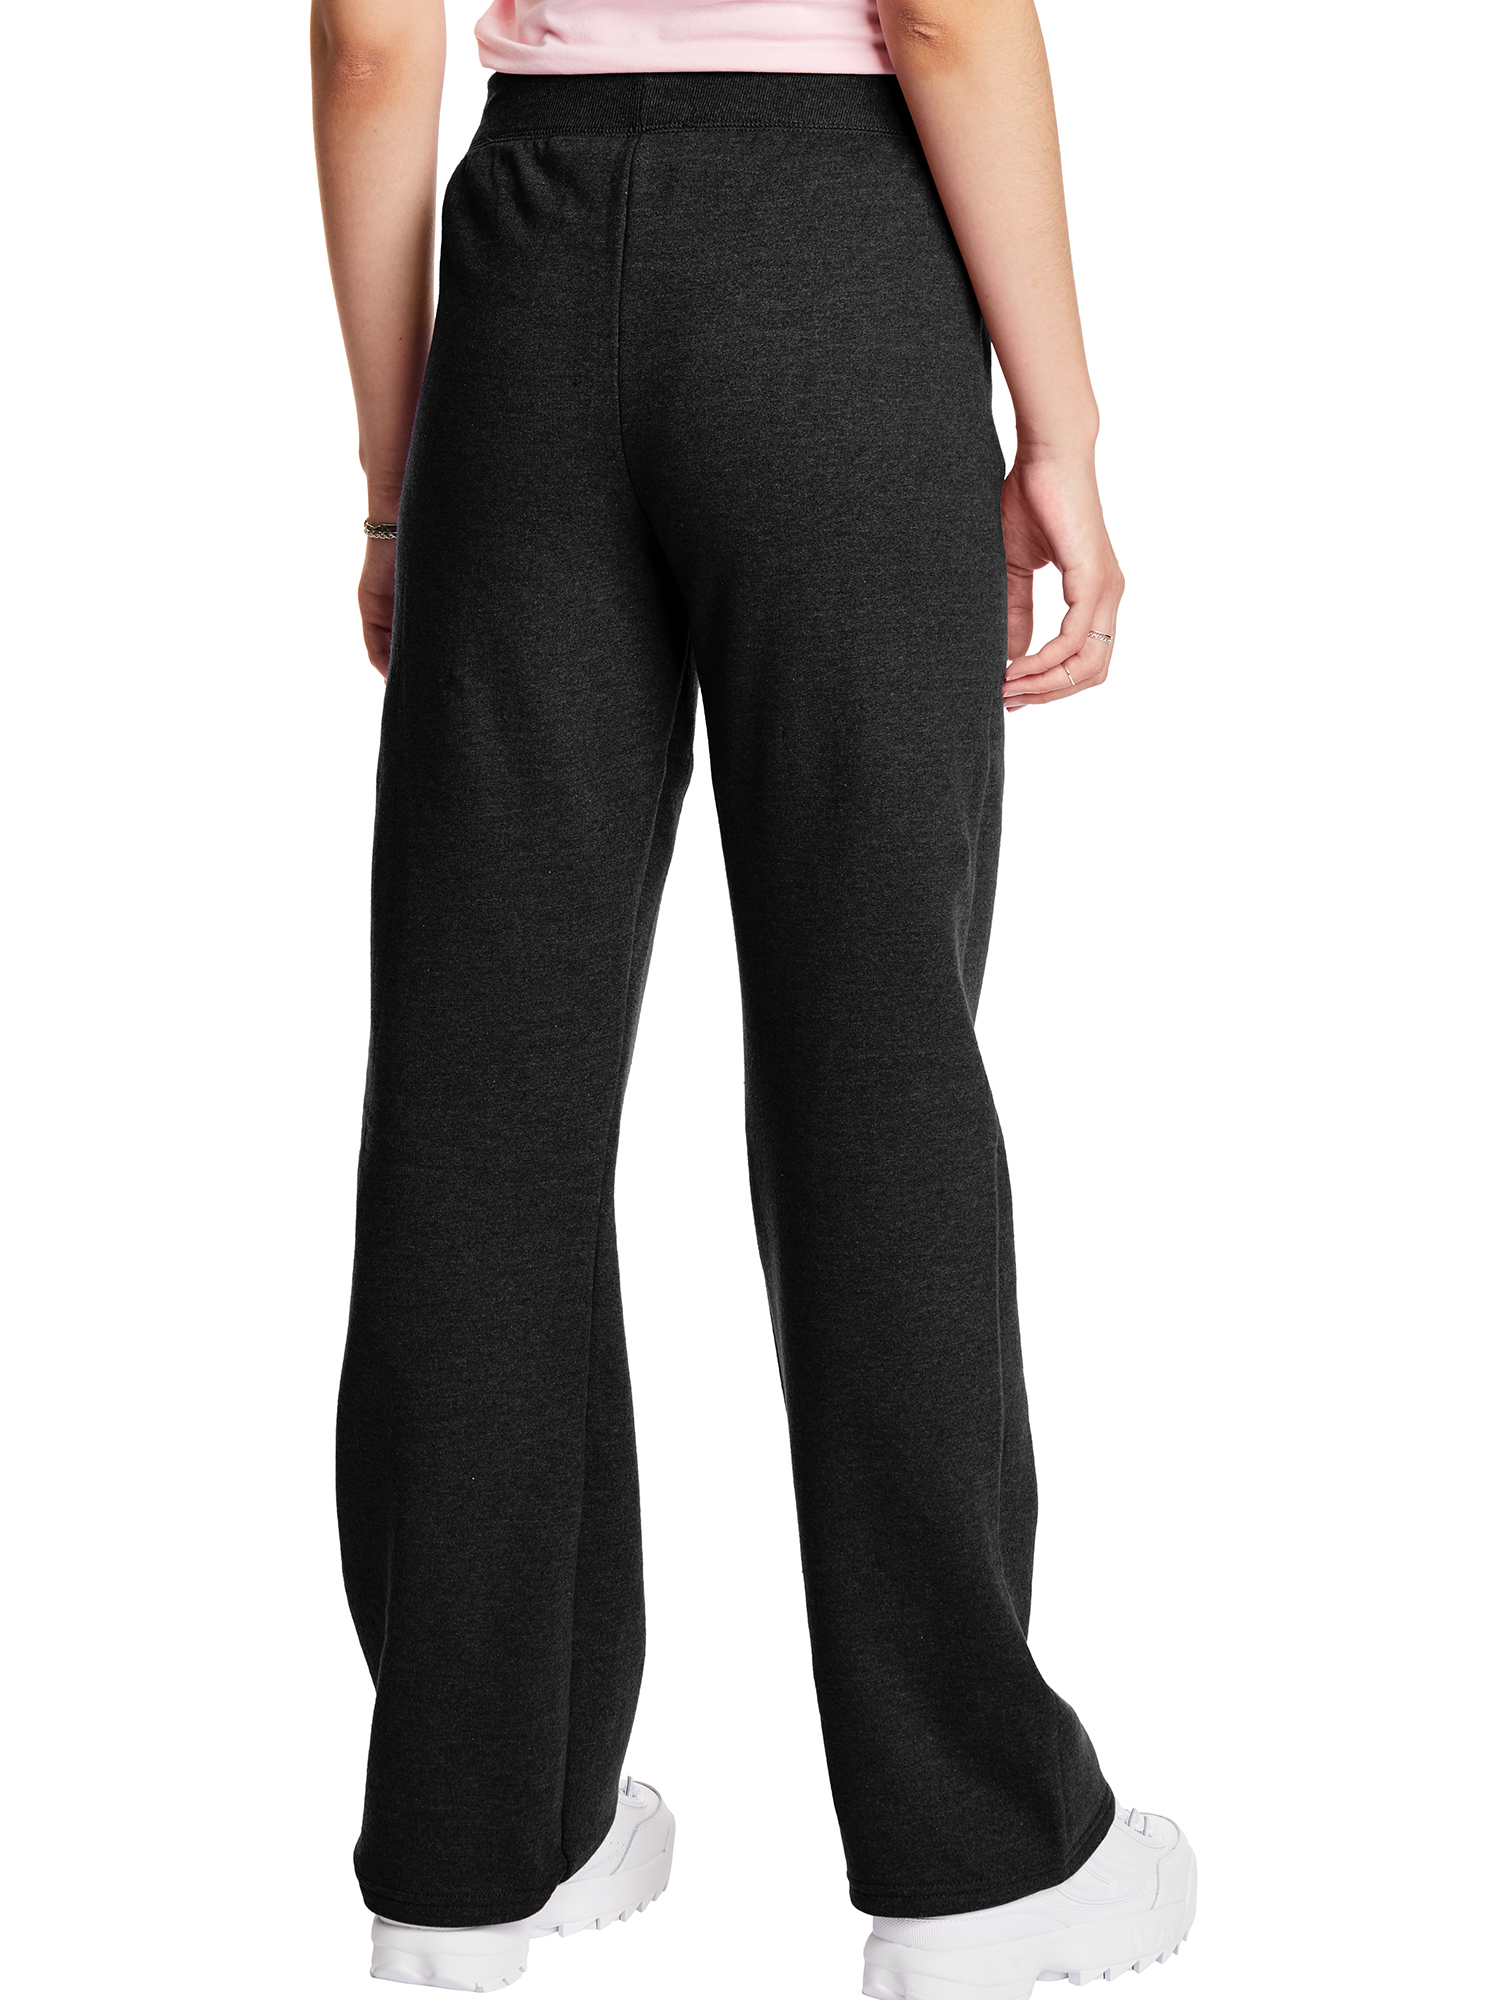 Hanes ComfortSoft EcoSmart Women's Open Bottom Fleece Sweatpants, Sizes S-XXL and Petite - image 2 of 5